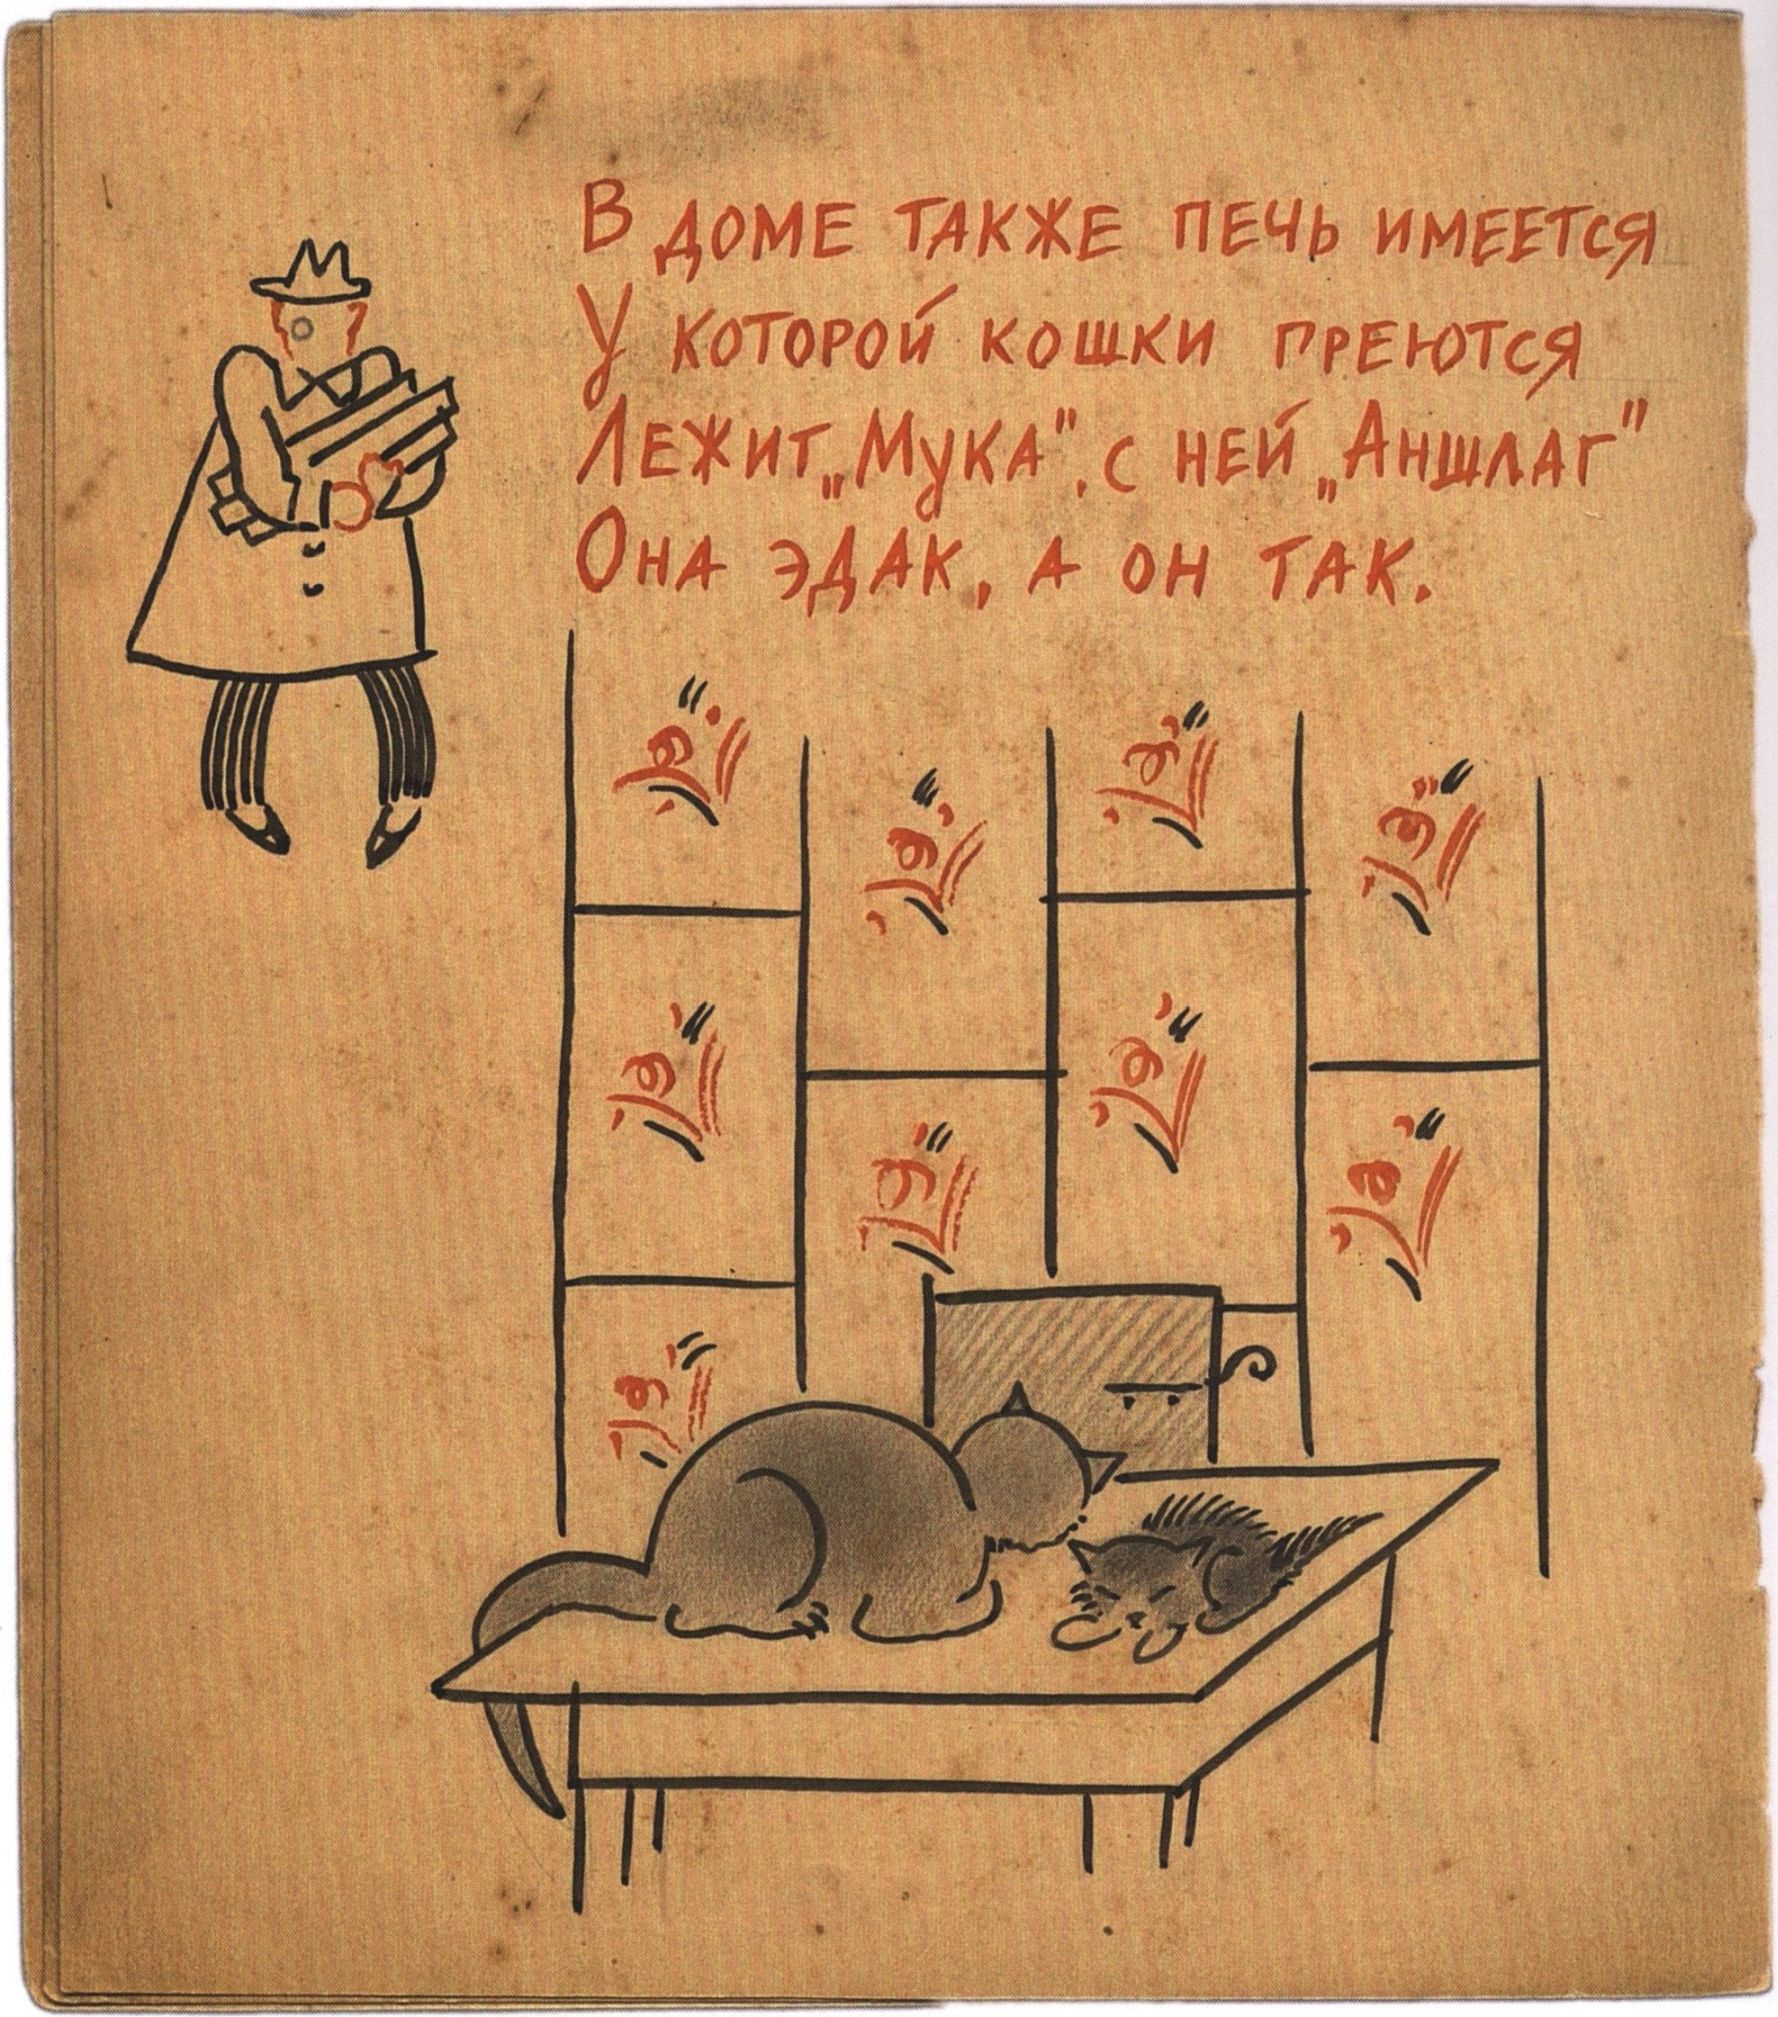 Страница из книги «Мука Маки». В левом верхнем углу изображен Михаил Булгаков в своем знаменитом монокле и с охапкой дров